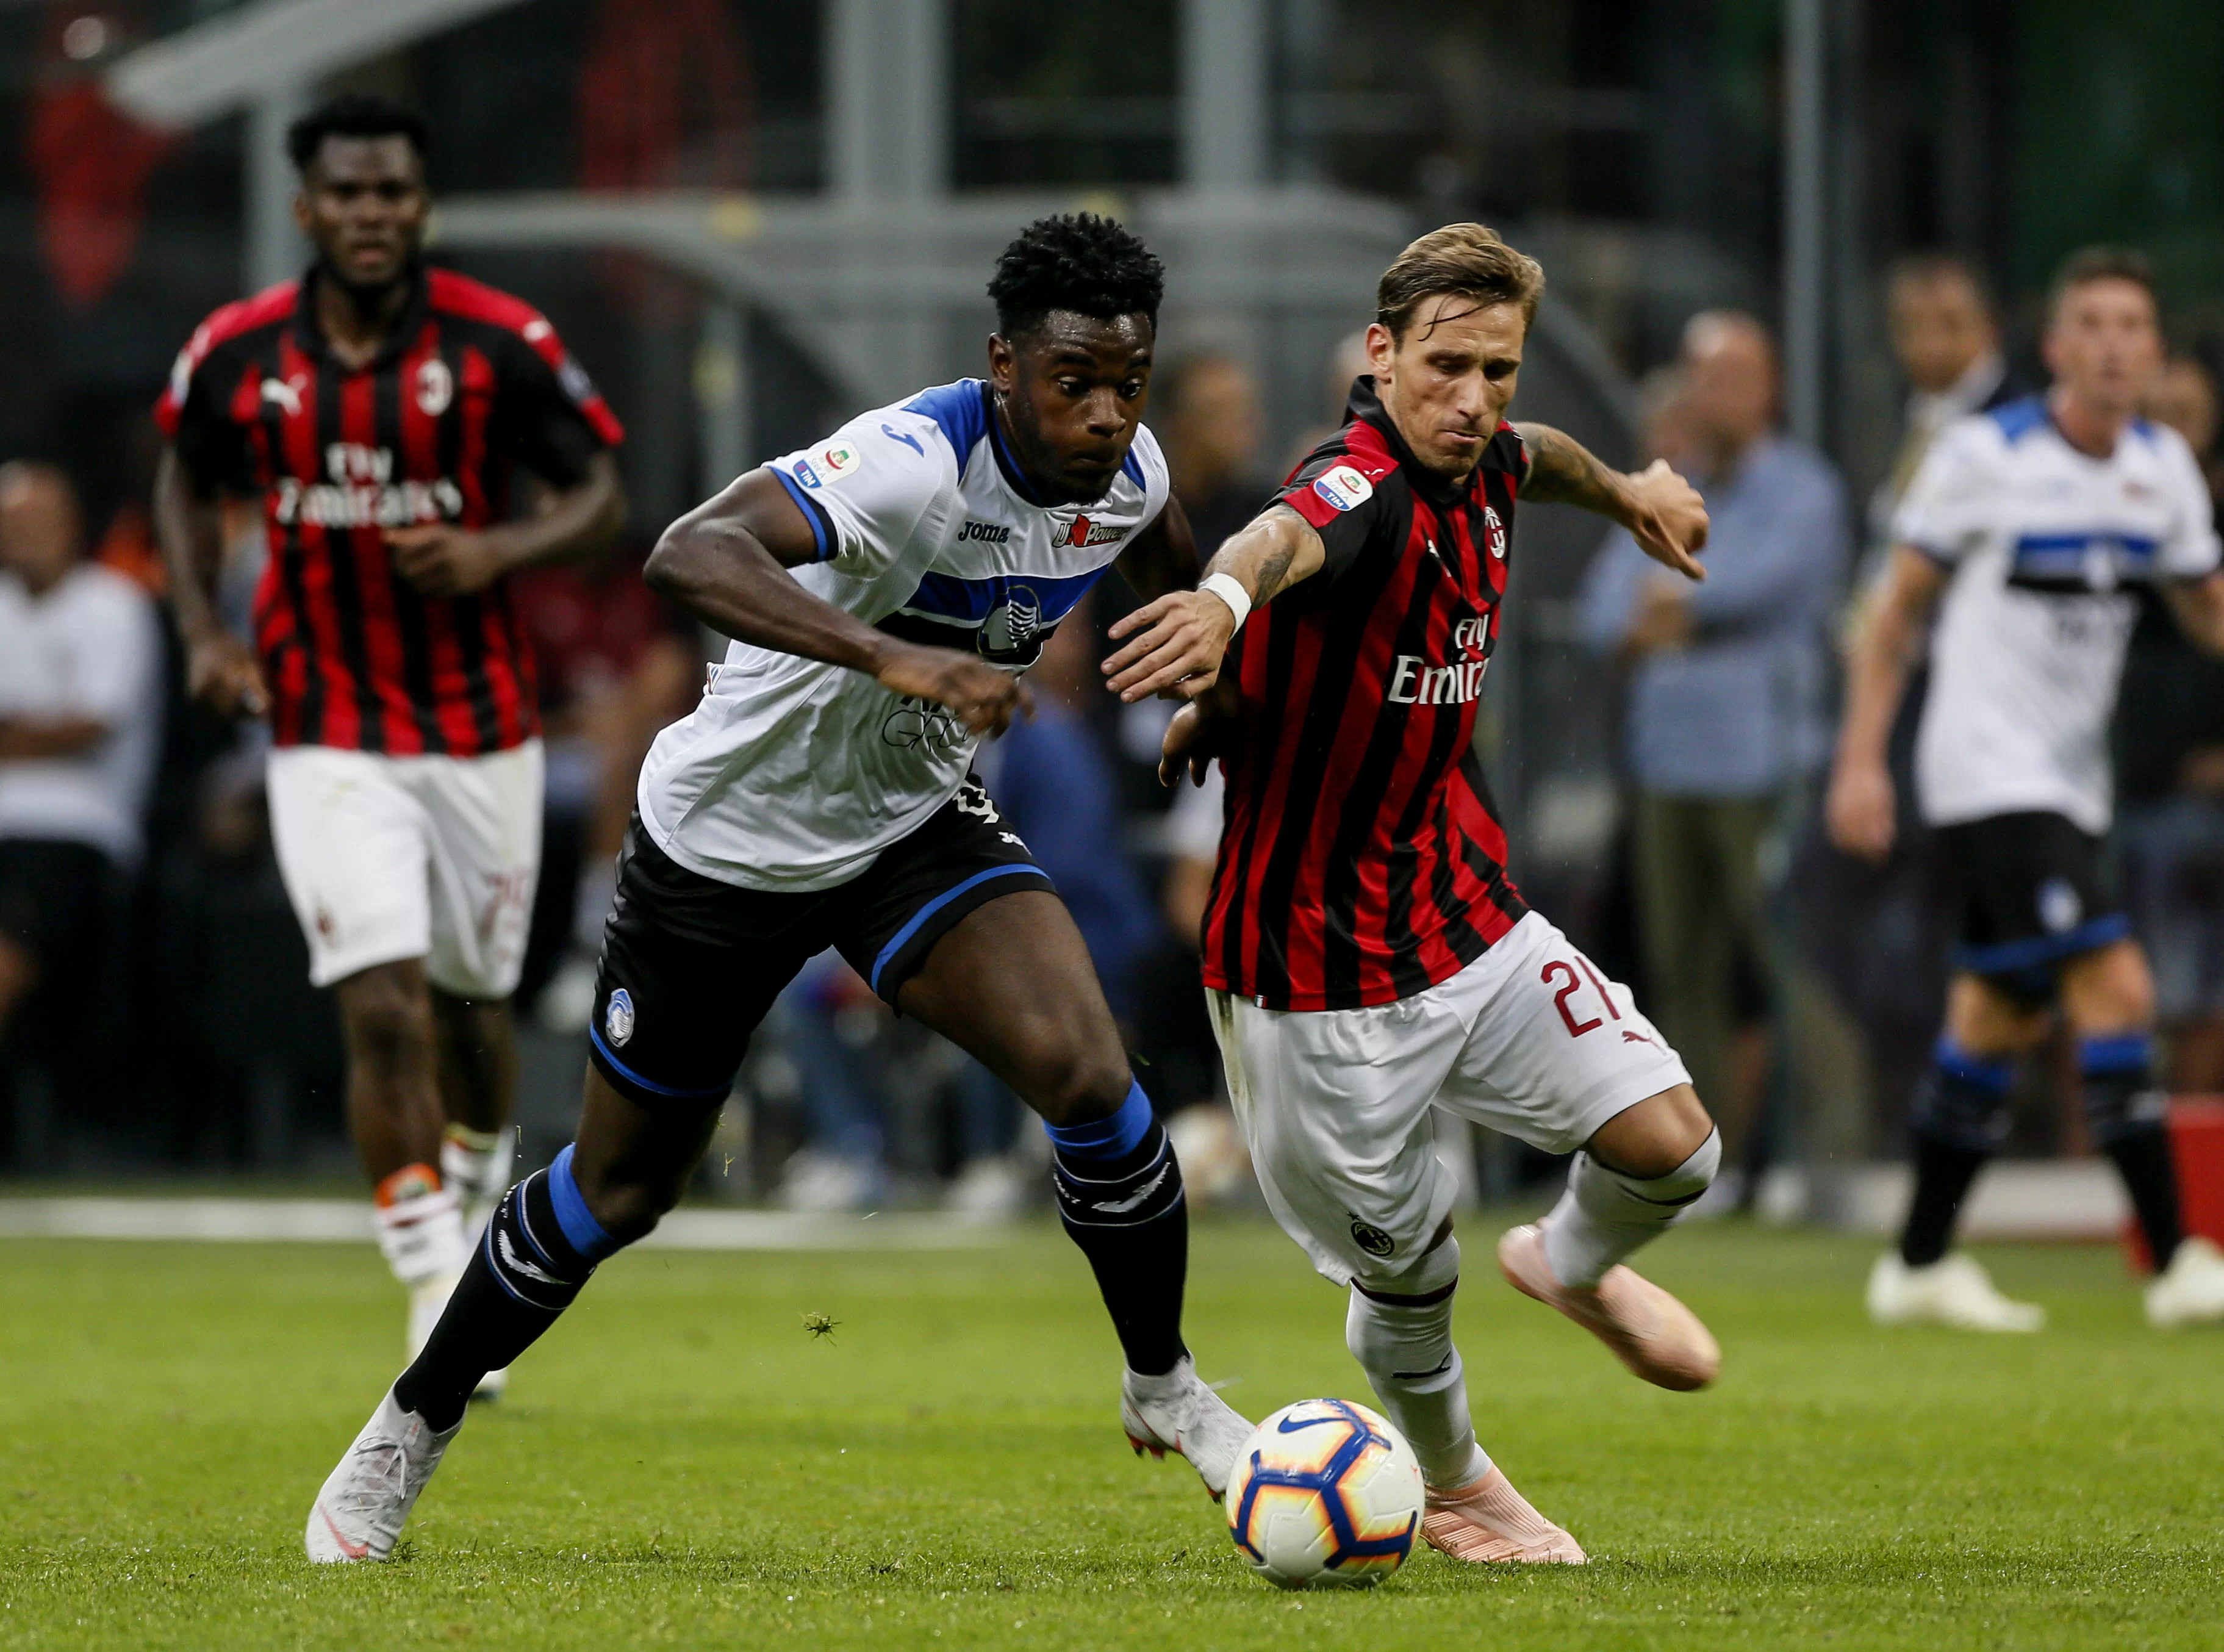 Empoli-Milan: niente gol a Biglia, è autorete di Capezzi